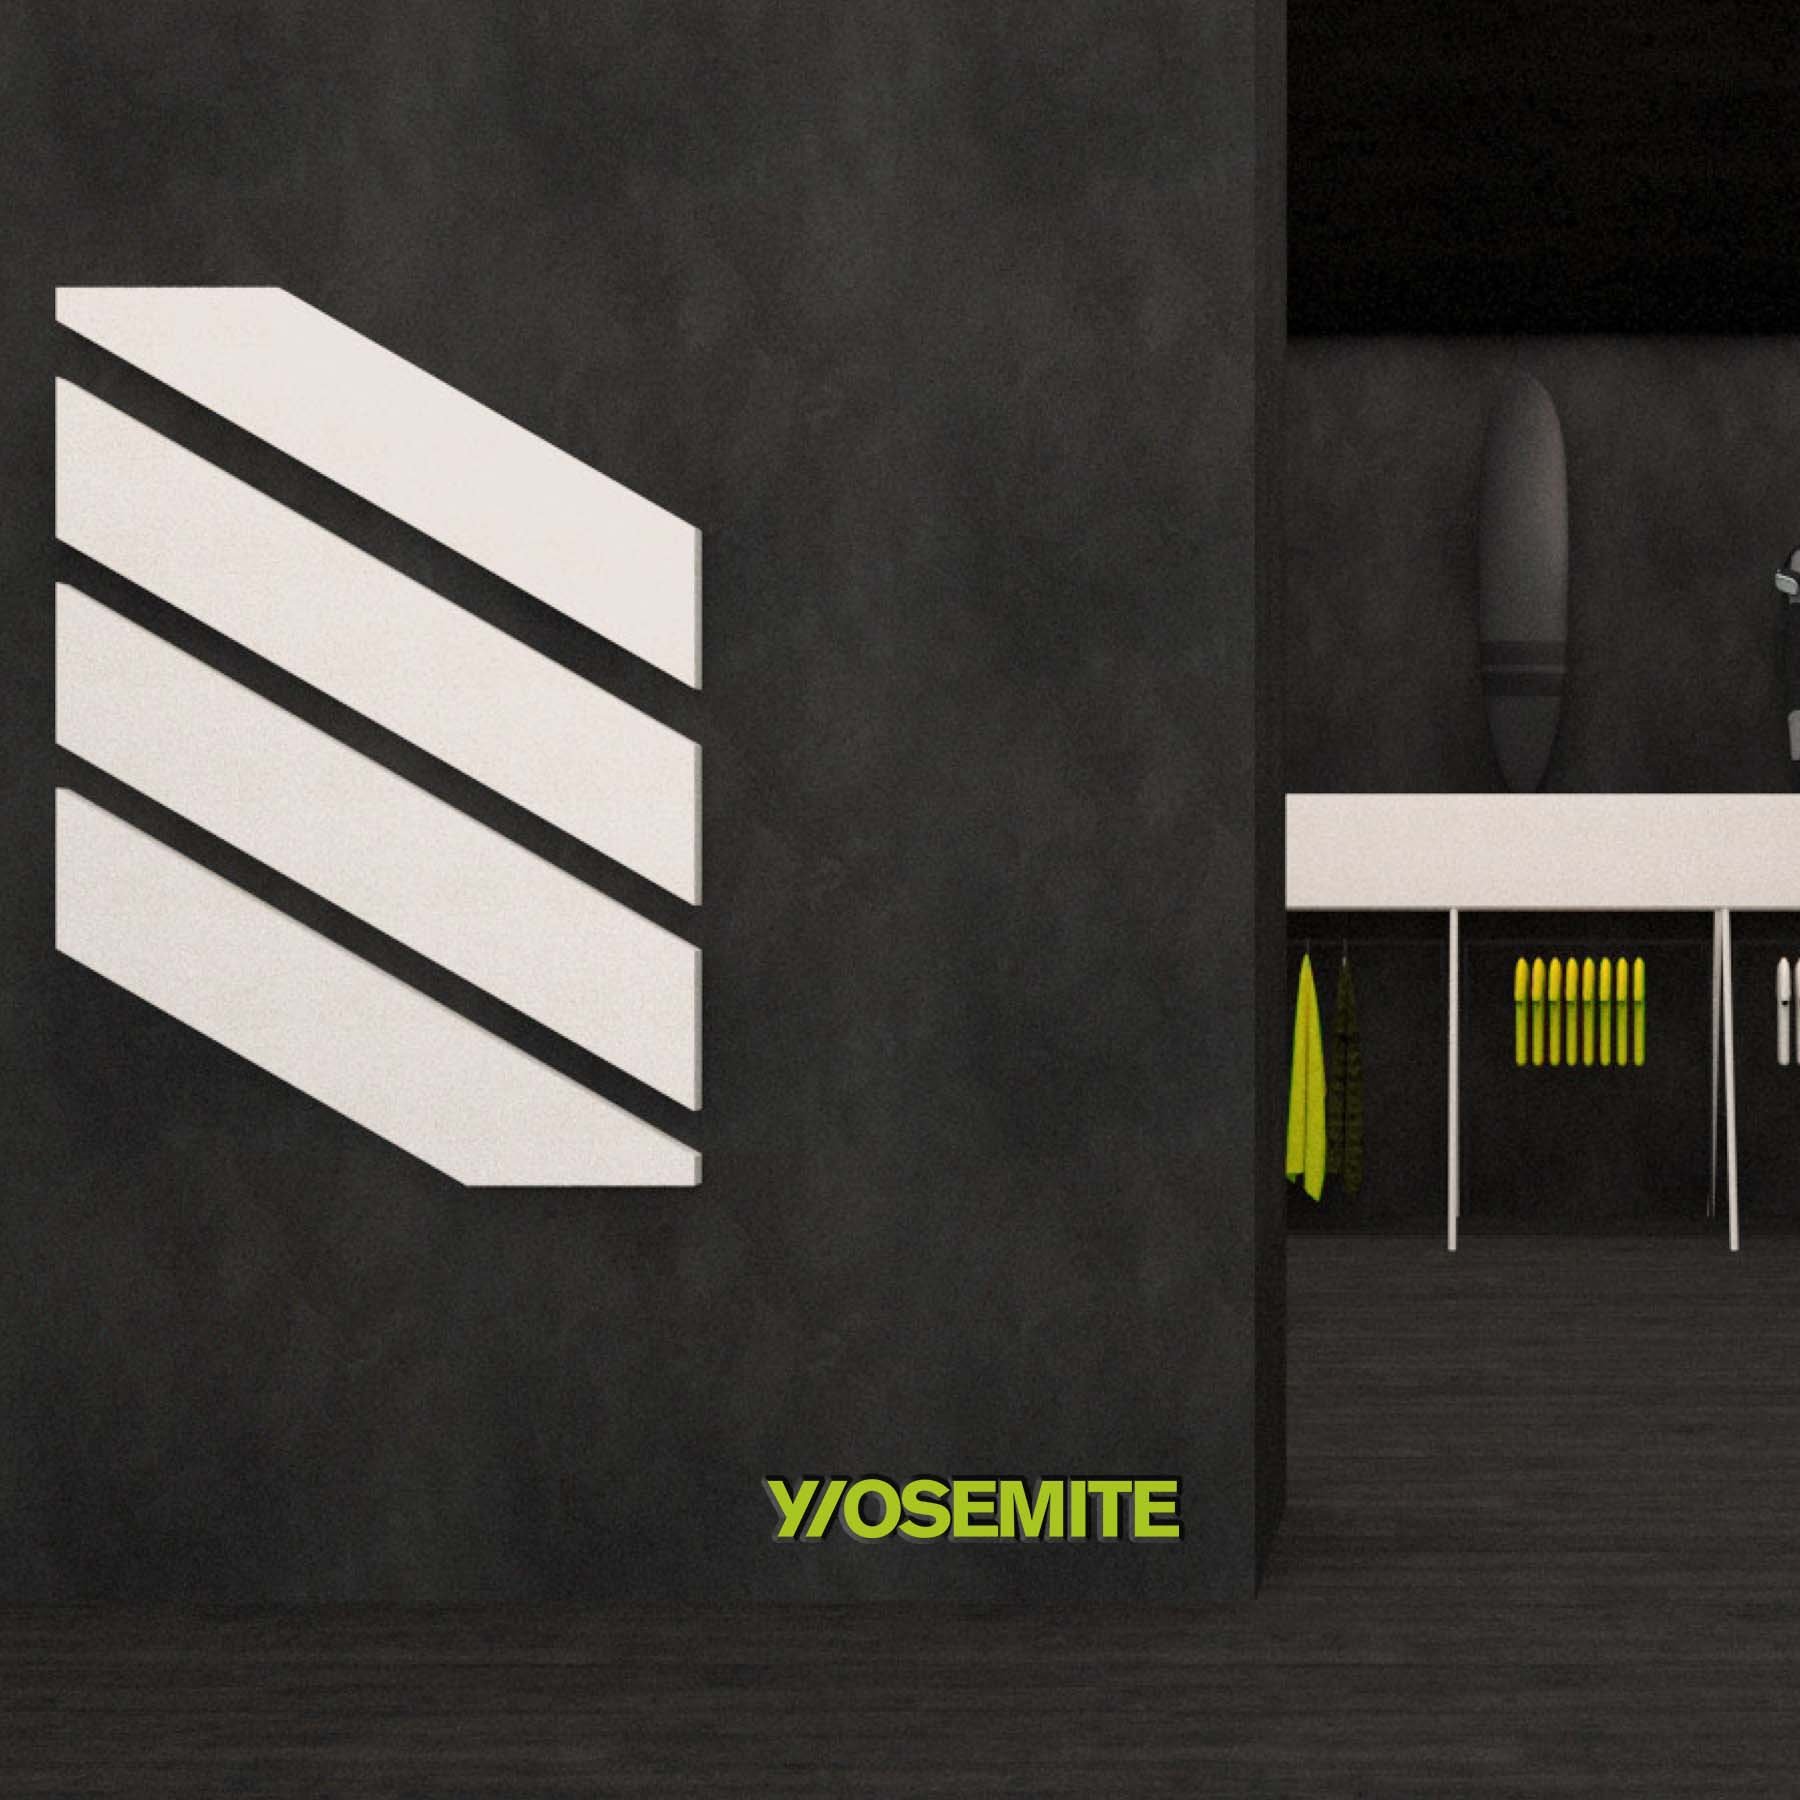 yosemite store mockup for portfolio instagram.jpg